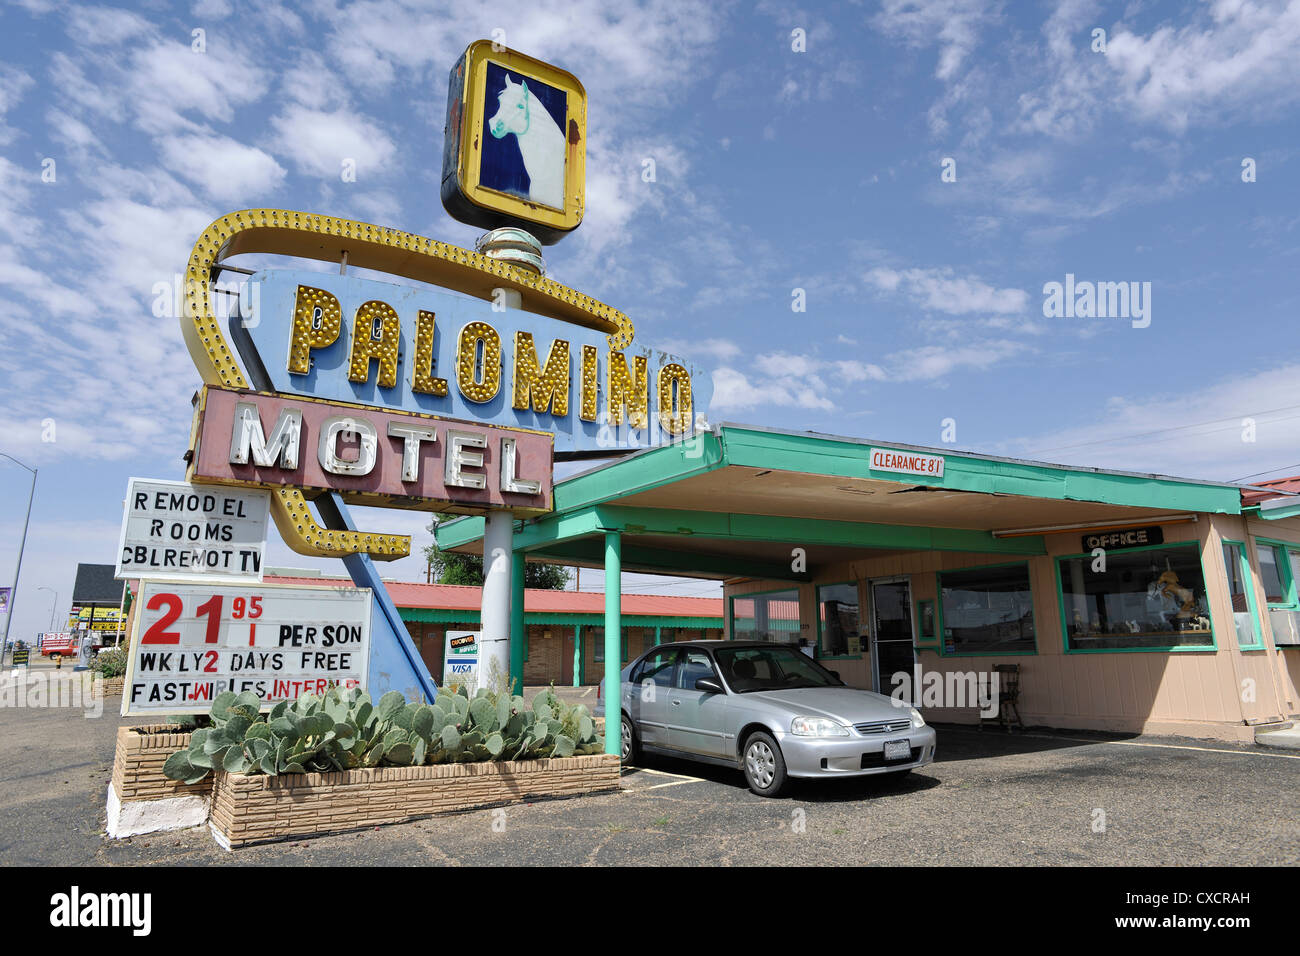 Palomino Motel, Route 66, Tucumcari New Mexico Stock Photo